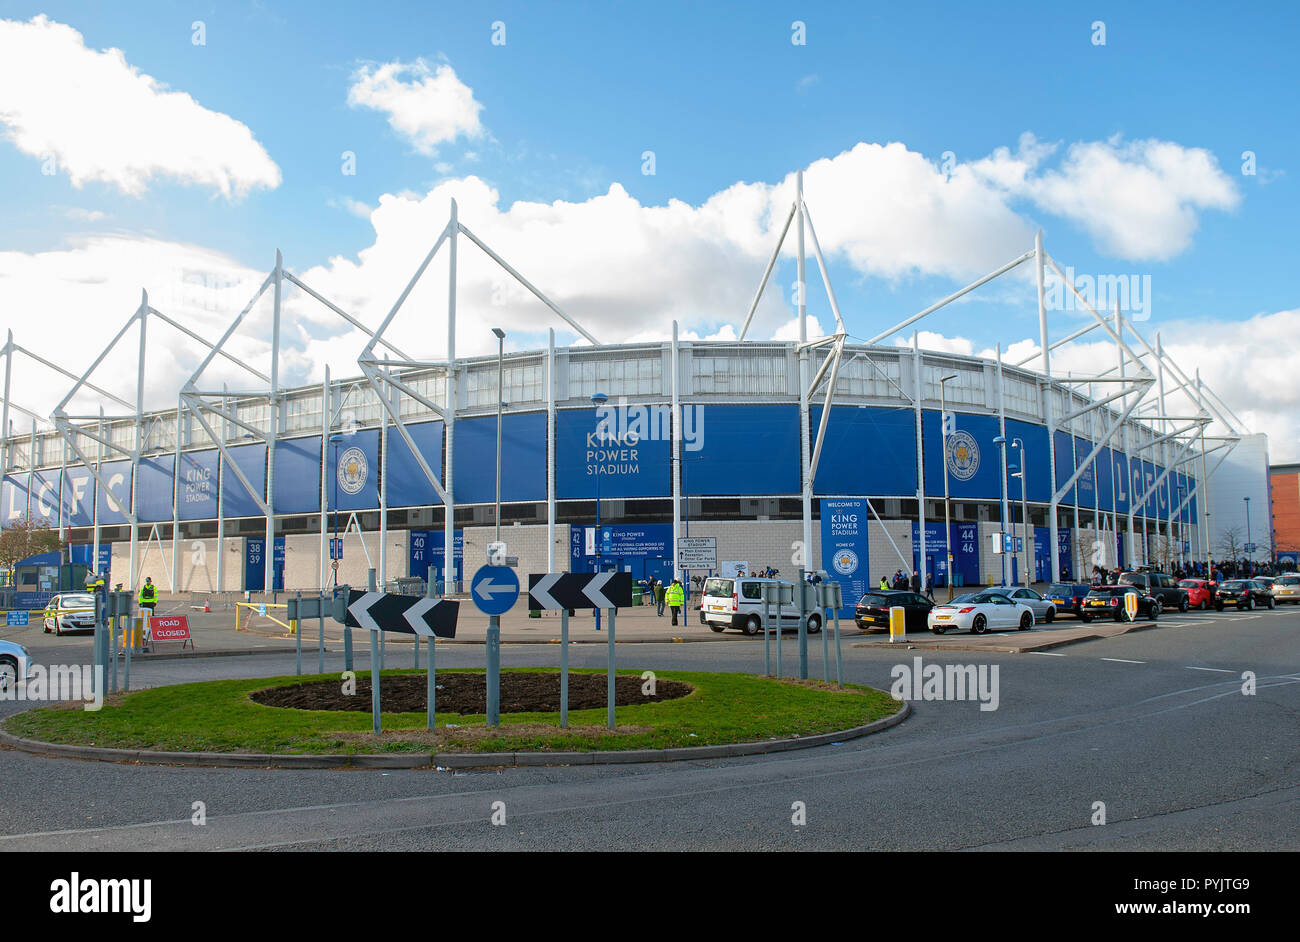 Hommages portées par Leicester City Football Club des supporters à l'écrasement de l'hélicoptère. King Power Stadium, Leicester, UK. Banque D'Images